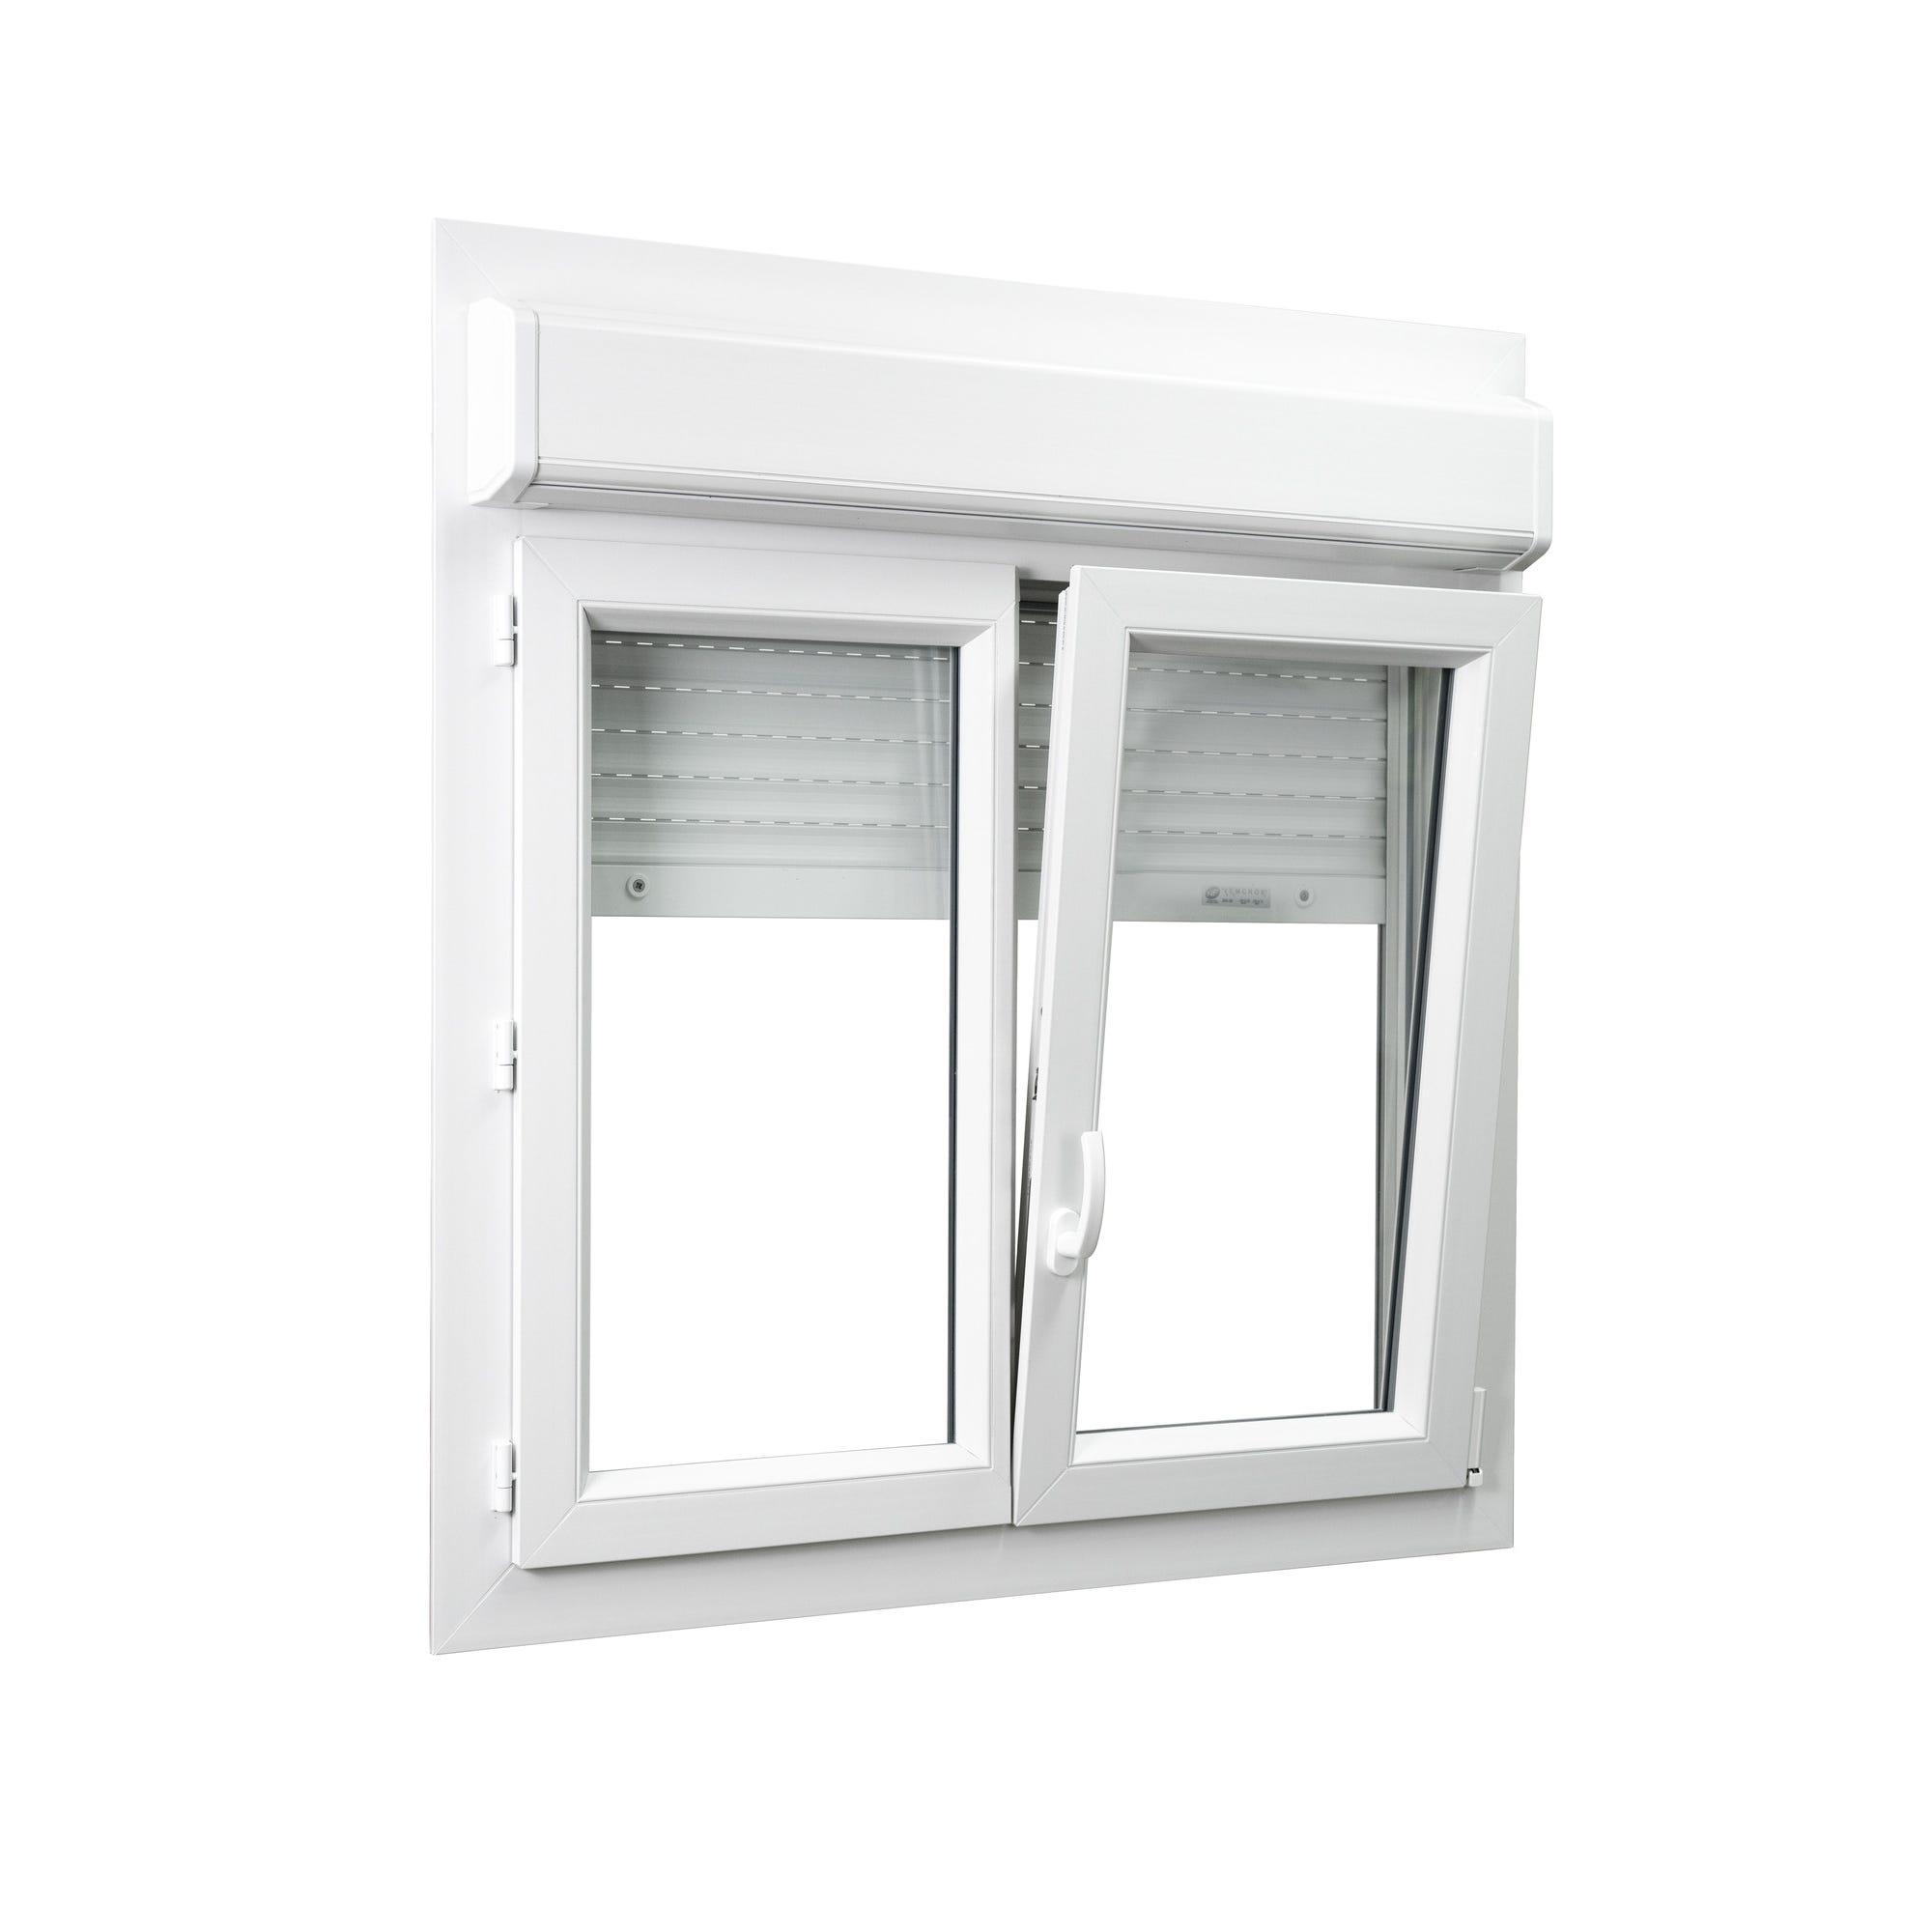 Fenêtre PVC 2 vantaux avec volet roulant intégré monobloc H.105 x l.100 cm - GROSFILLEX 1